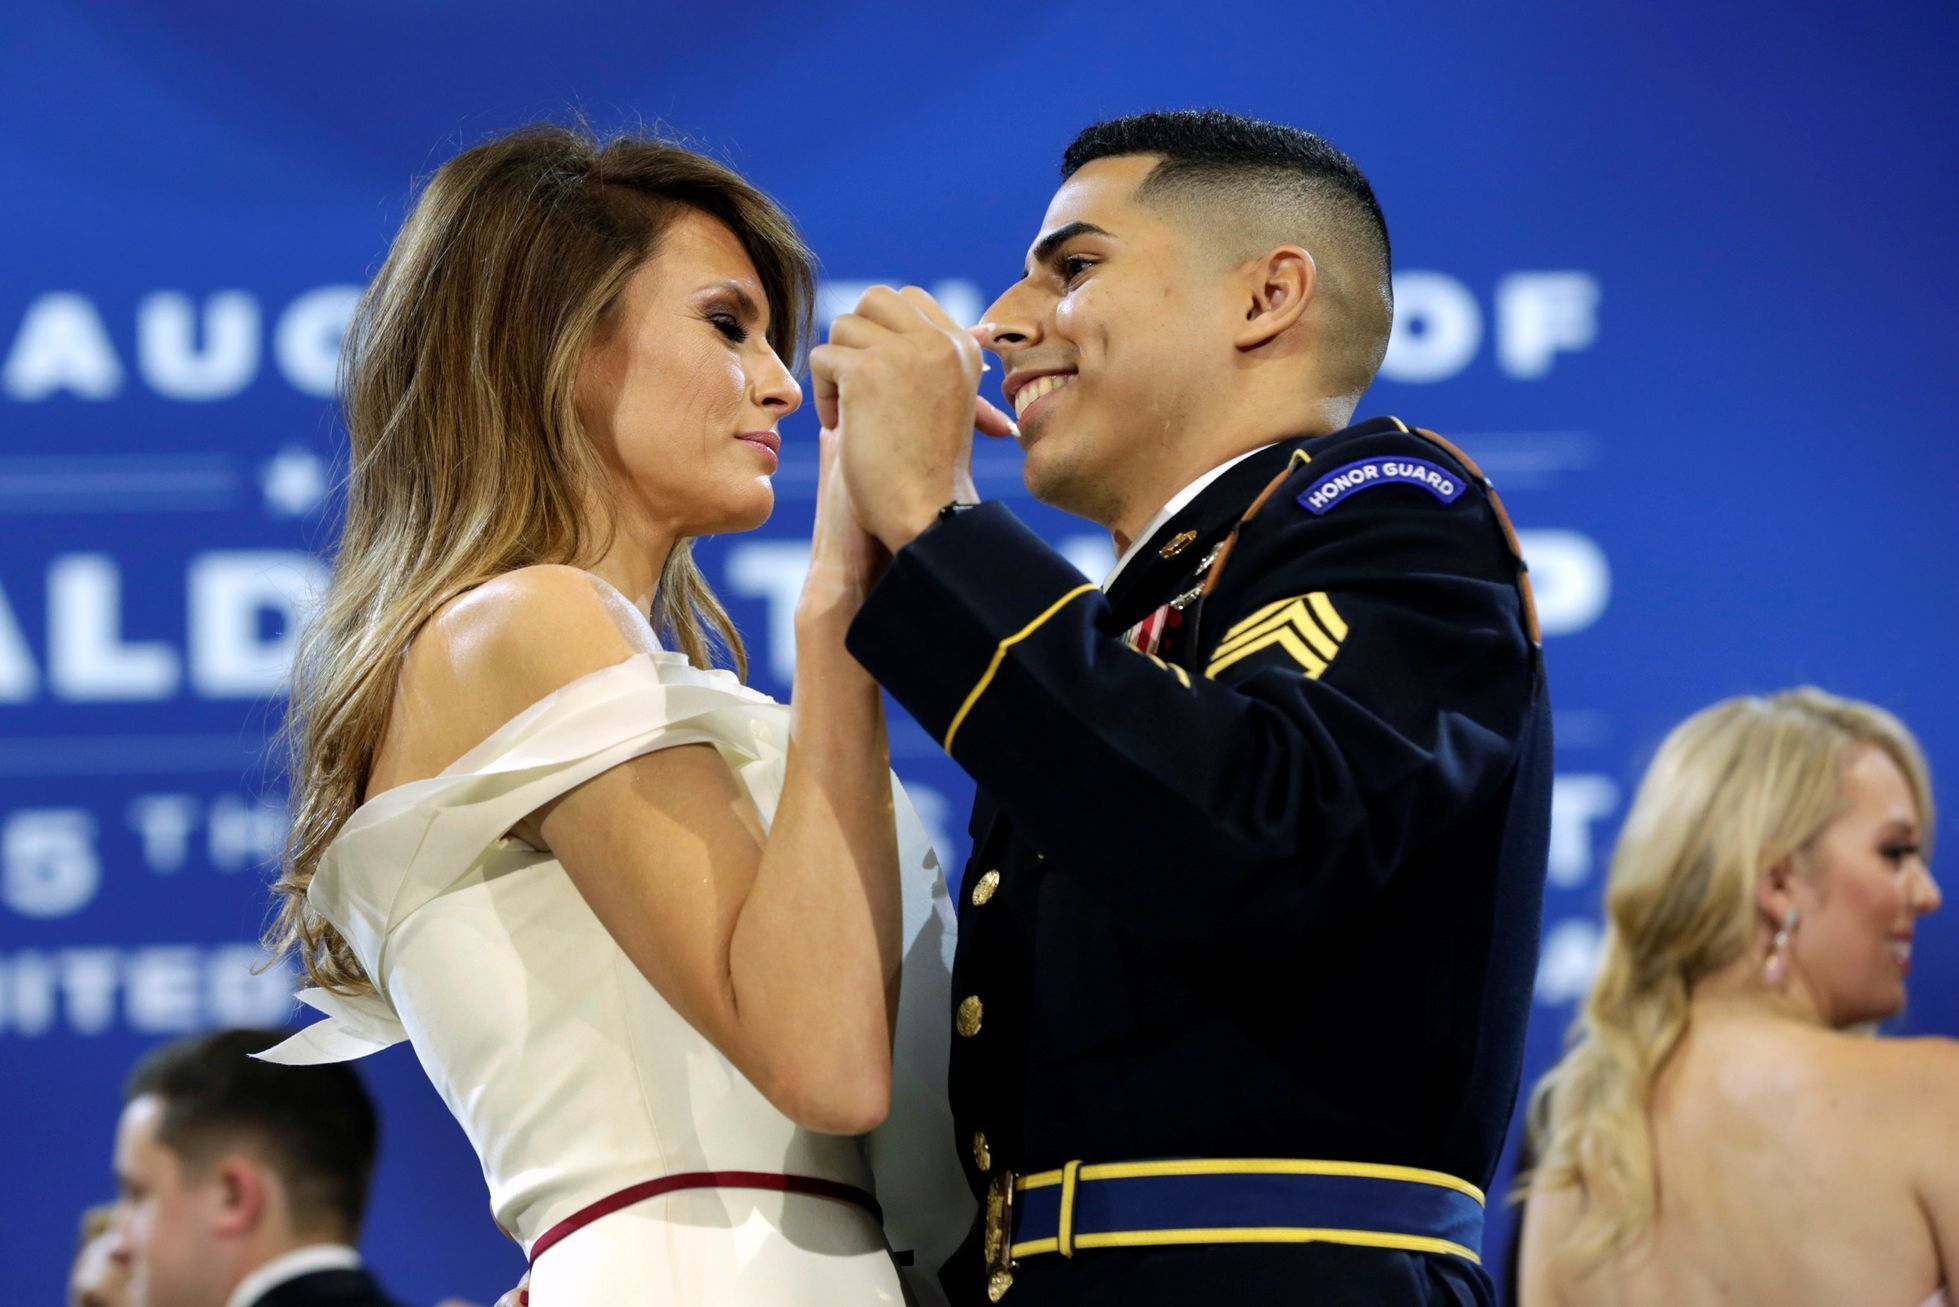 Melanie Trumpová tančí s vojákem.